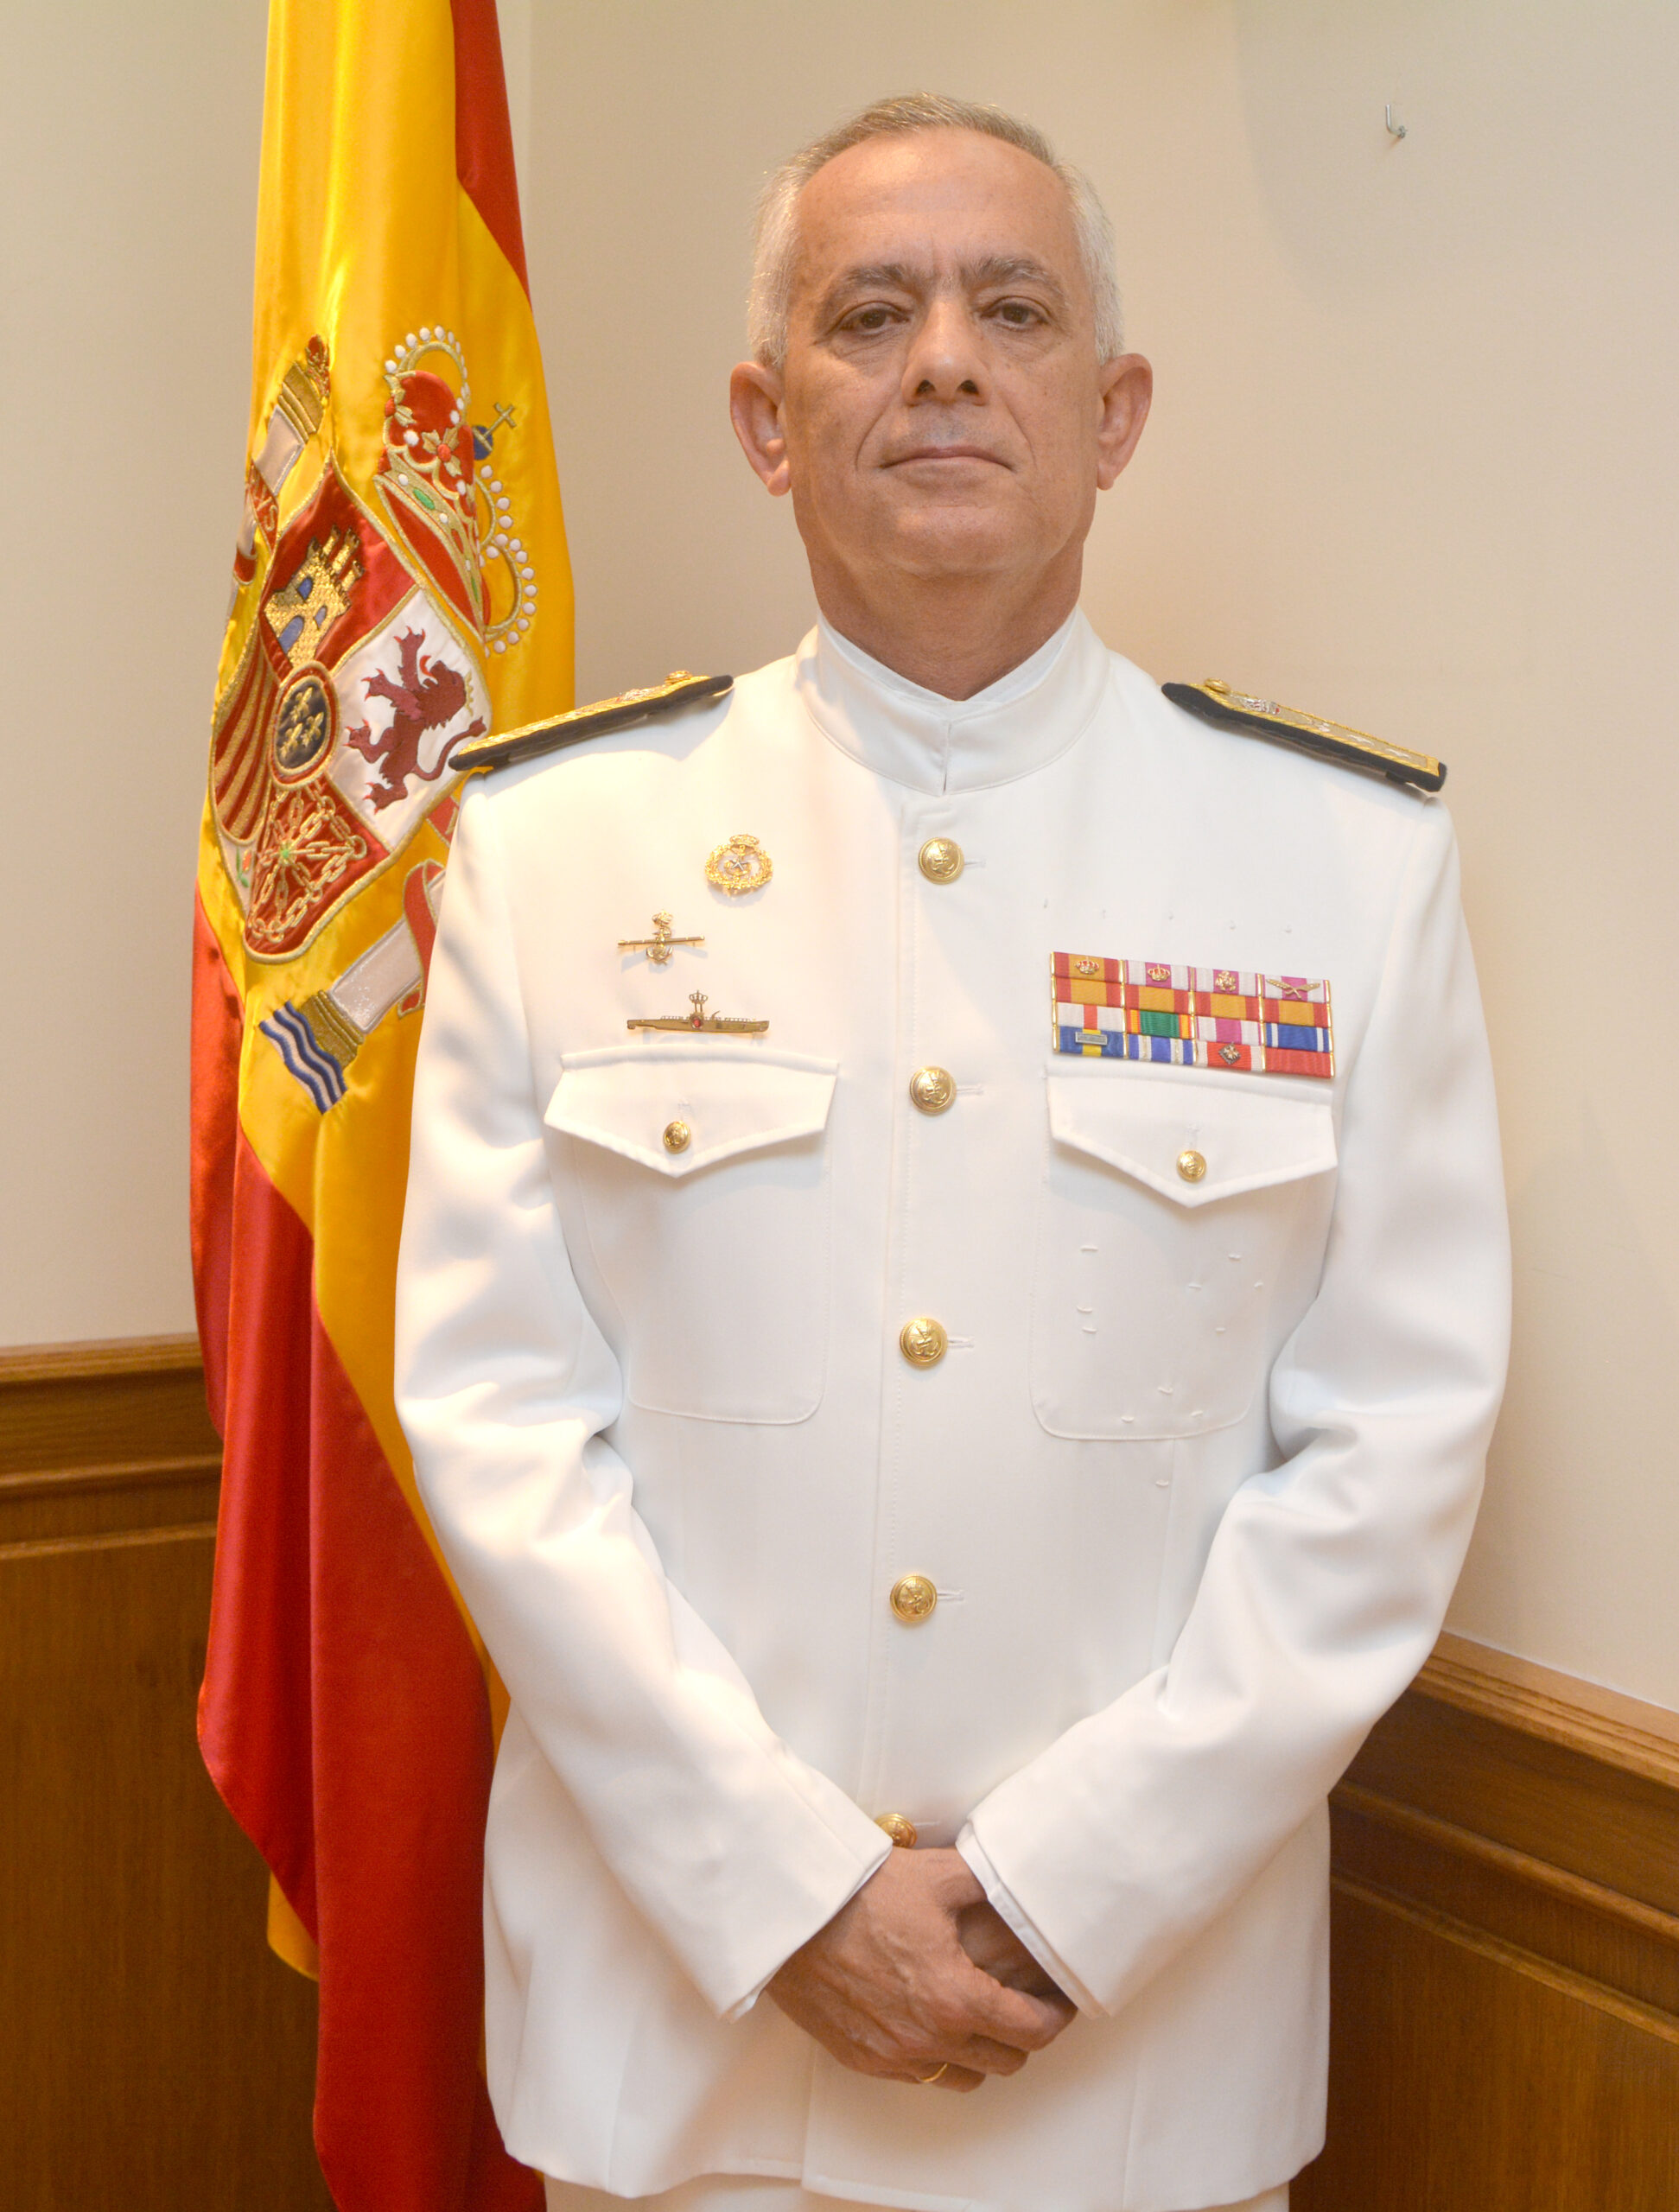 Almirante D. Marcial Gamboa Pérez Pardo